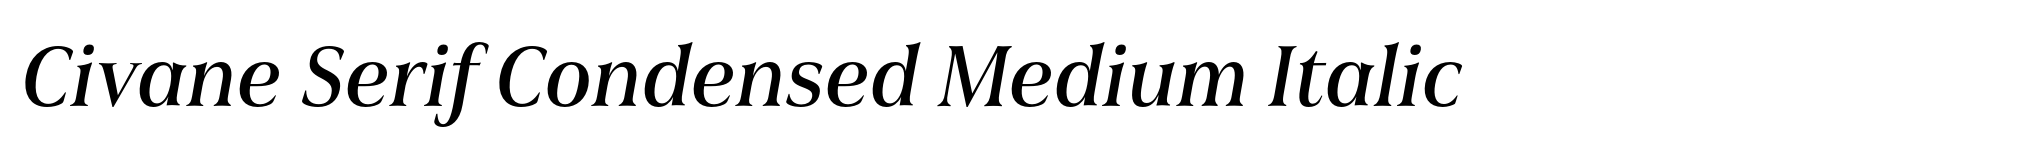 Civane Serif Condensed Medium Italic image